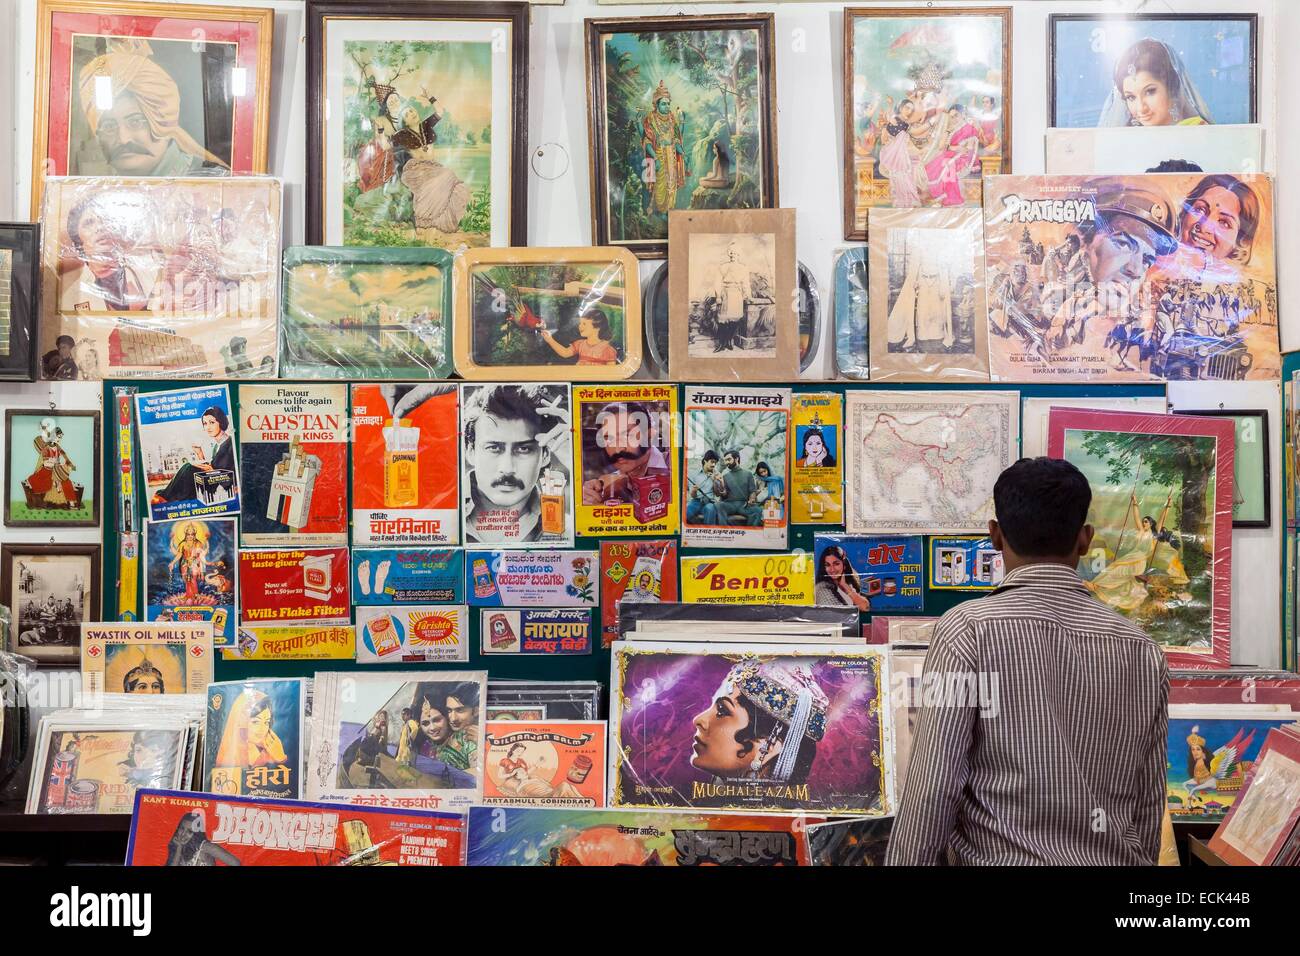 India, Nuova Delhi, Hauz Khas village memorizzare tutte le arti che vende carta straccia (annunci pubblicitari e manifesti di cinema, litografie ...) Foto Stock